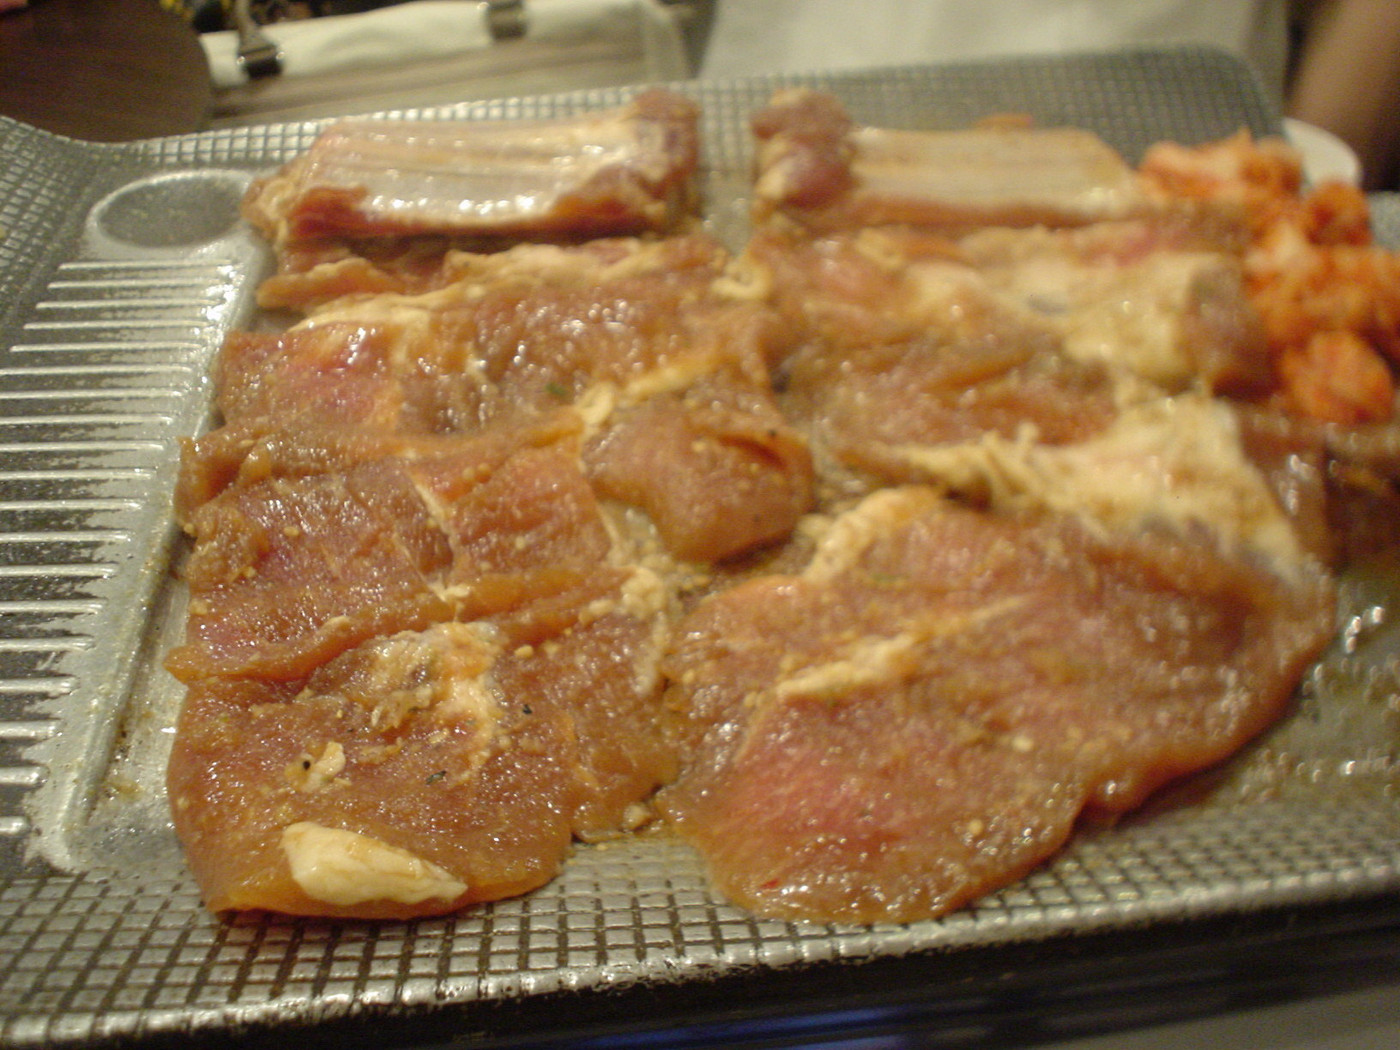 「韓国家庭料理 イタロー」料理 9917 豚カルビ